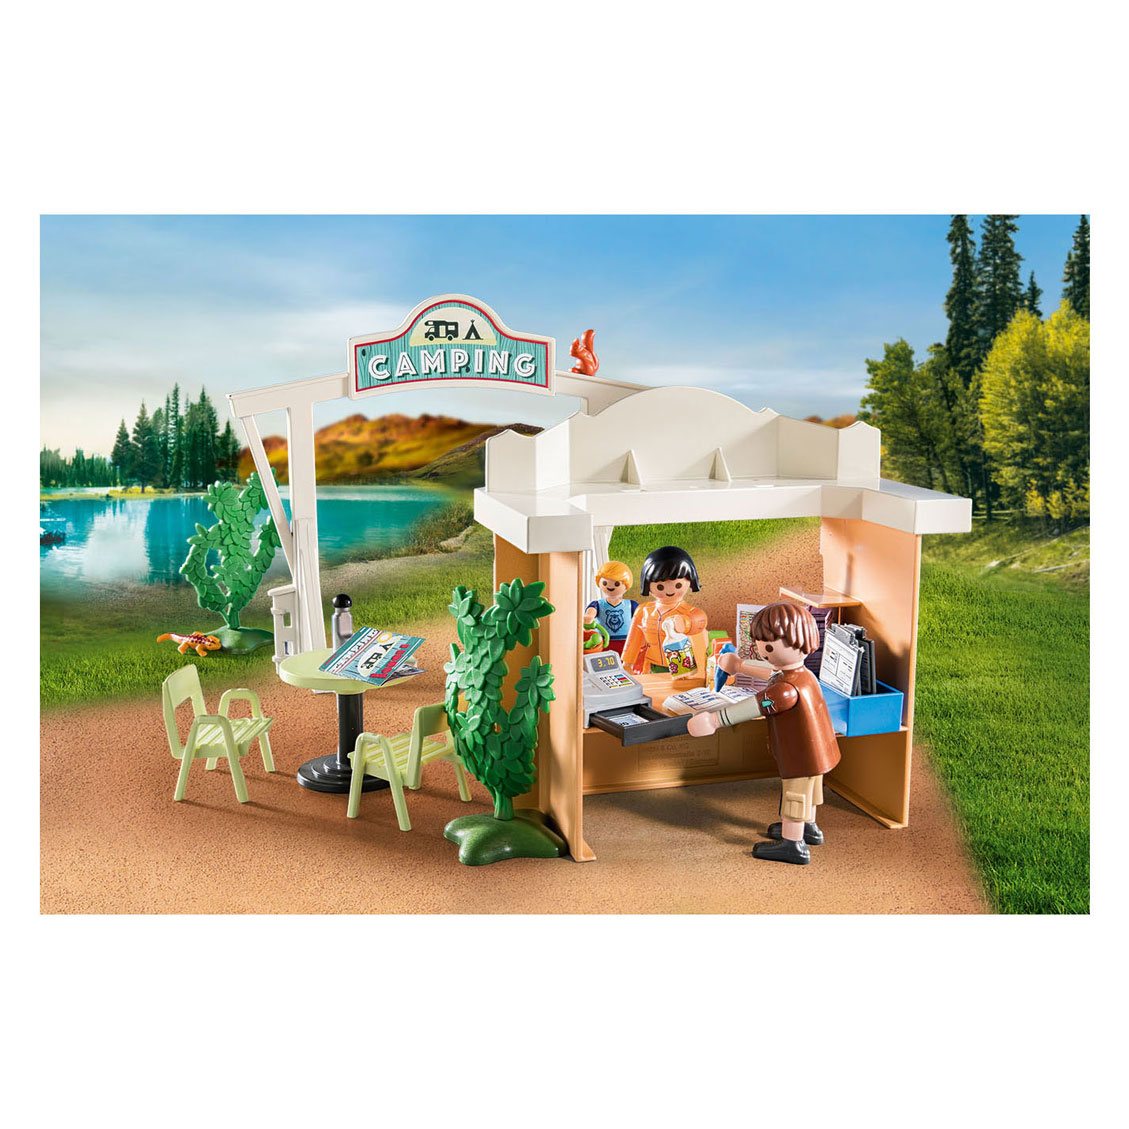 Playmobil Camping amusant en famille - 71424